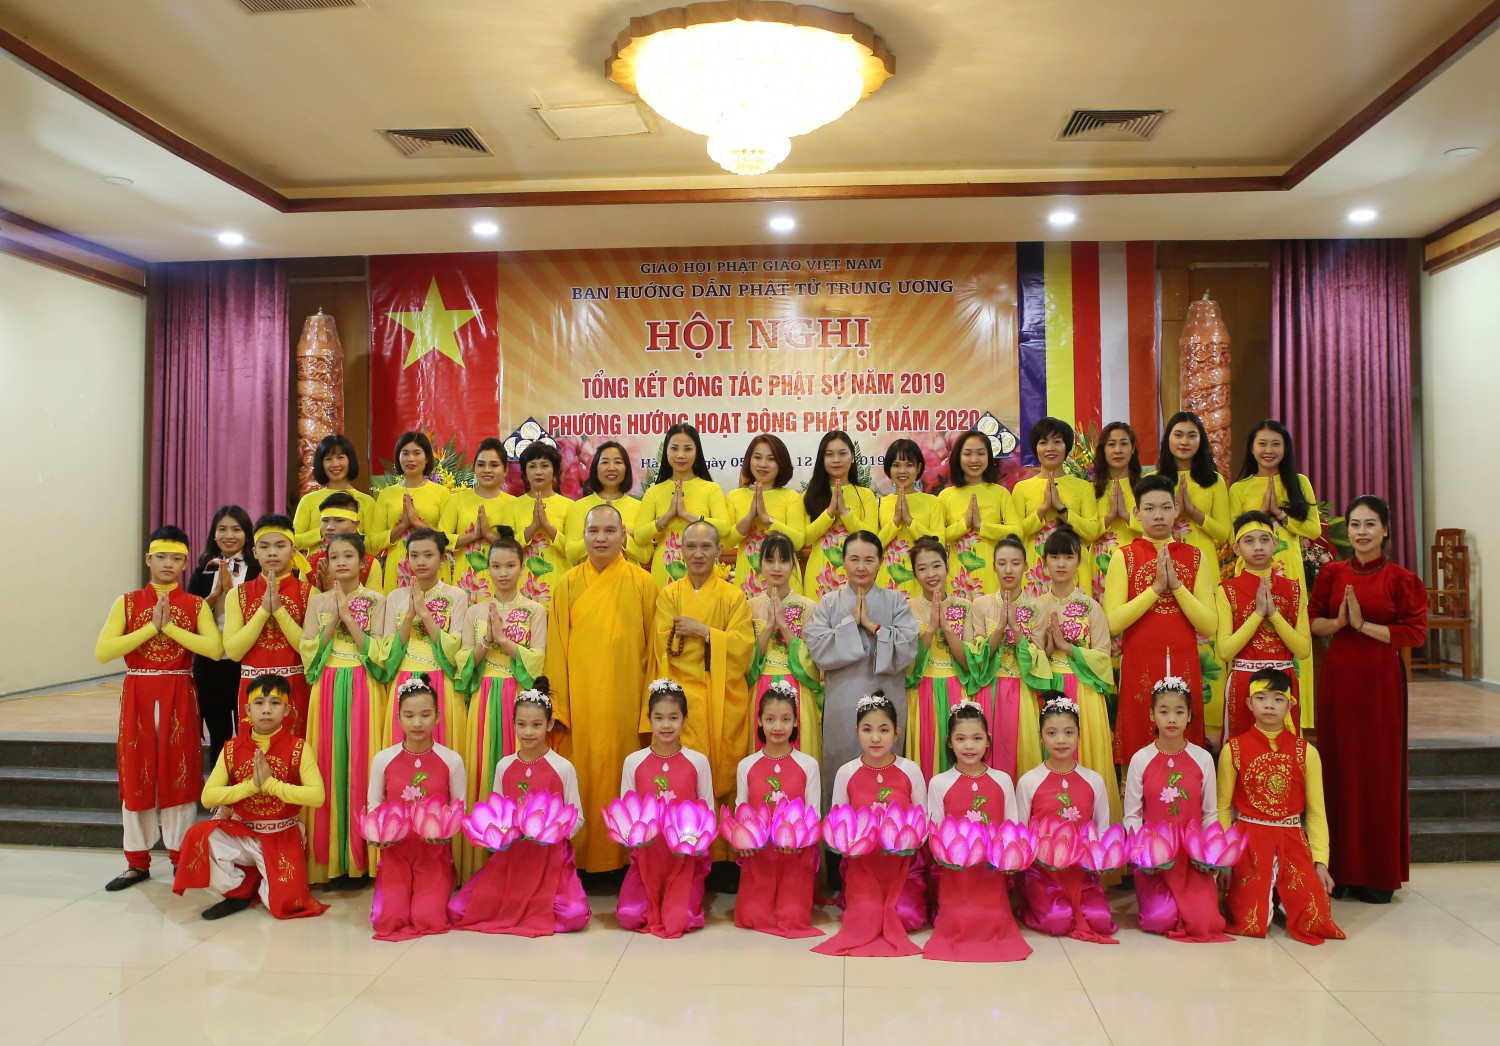 Hà Nội: Ban HDPT T.Ư khu vực phía Bắc tổ chức Hội nghị tổng kết công tác Phật sự năm 2019